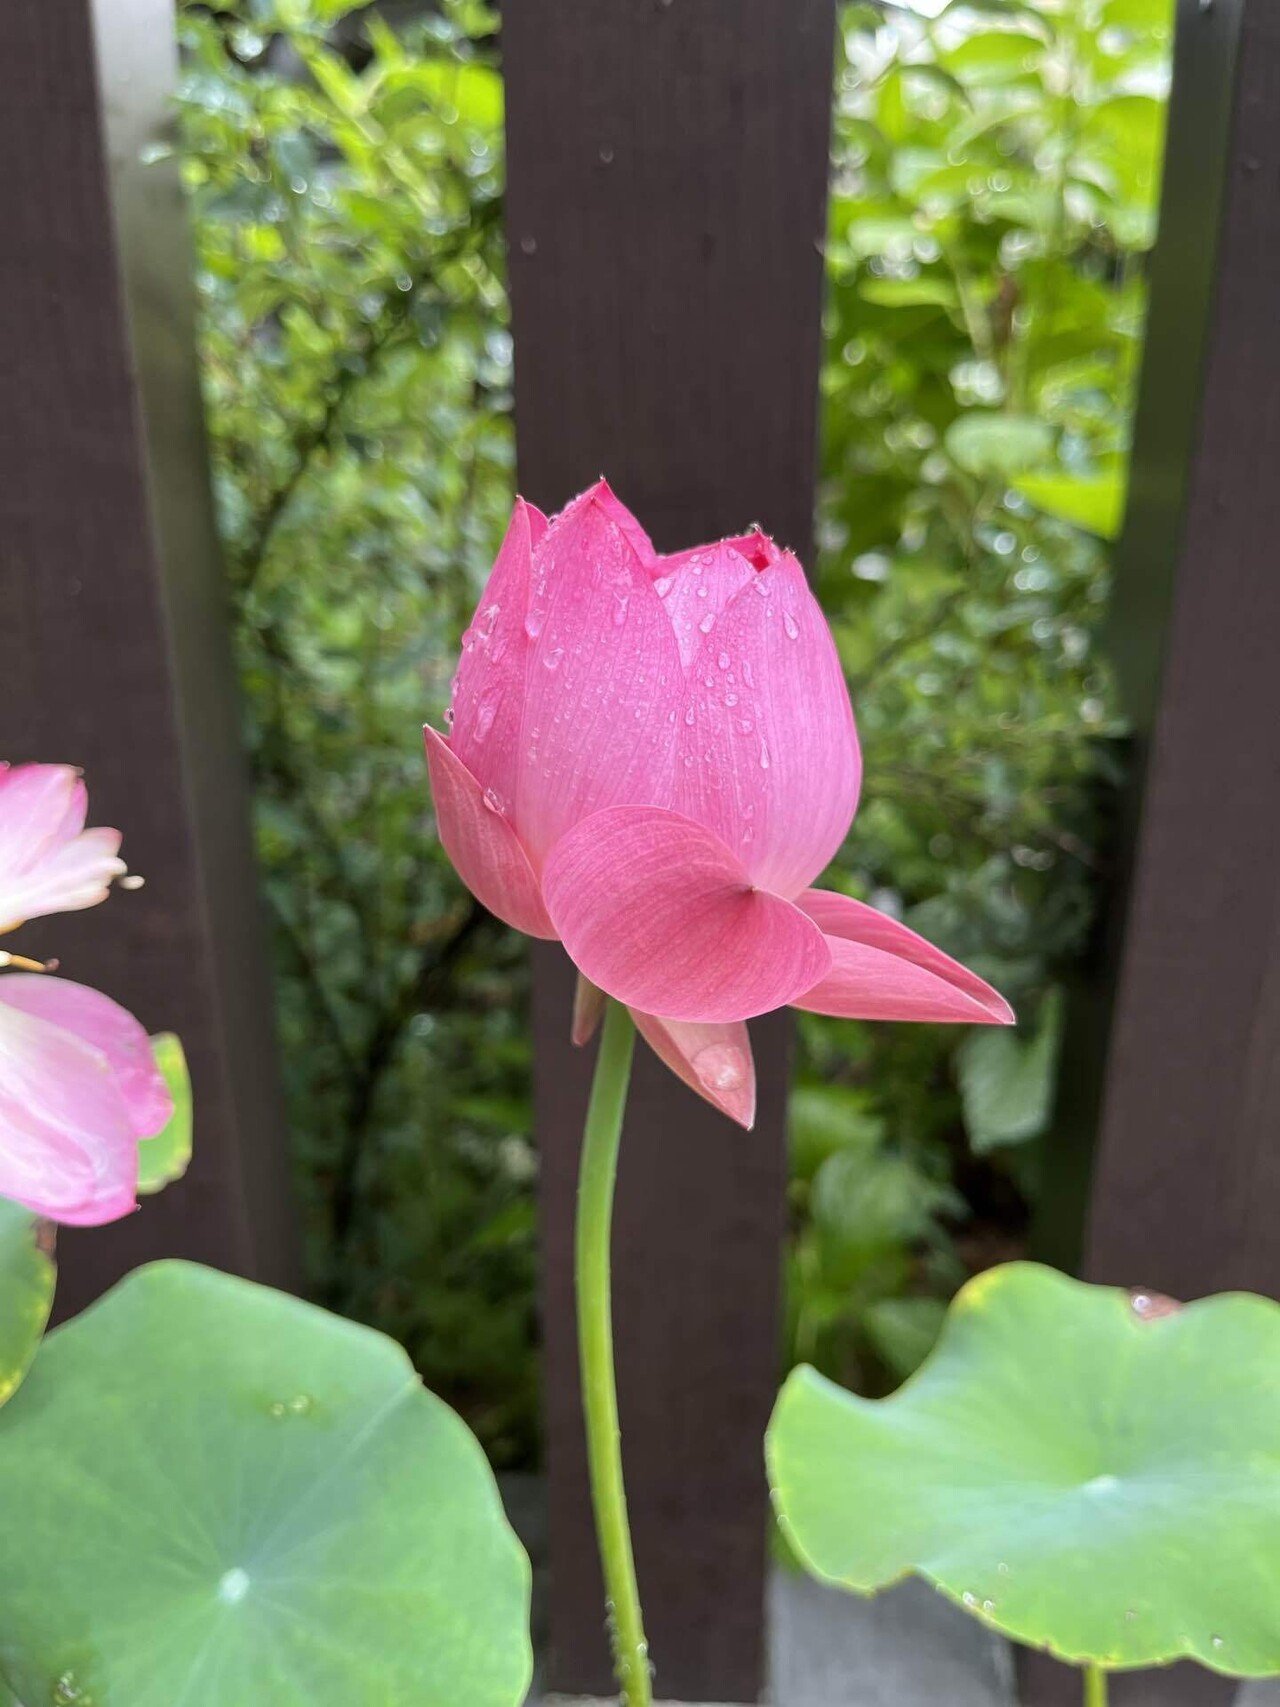 おはようございます 7月の誕生花は 蓮 はす の花 英語では ロータス Lotus です そういえば 蓮は泥より出でて泥に染まらず という言葉がありました 蓮は泥水の養分を吸って大輪の花が咲く 櫻田弘文 ブランディング プロデューサー Note